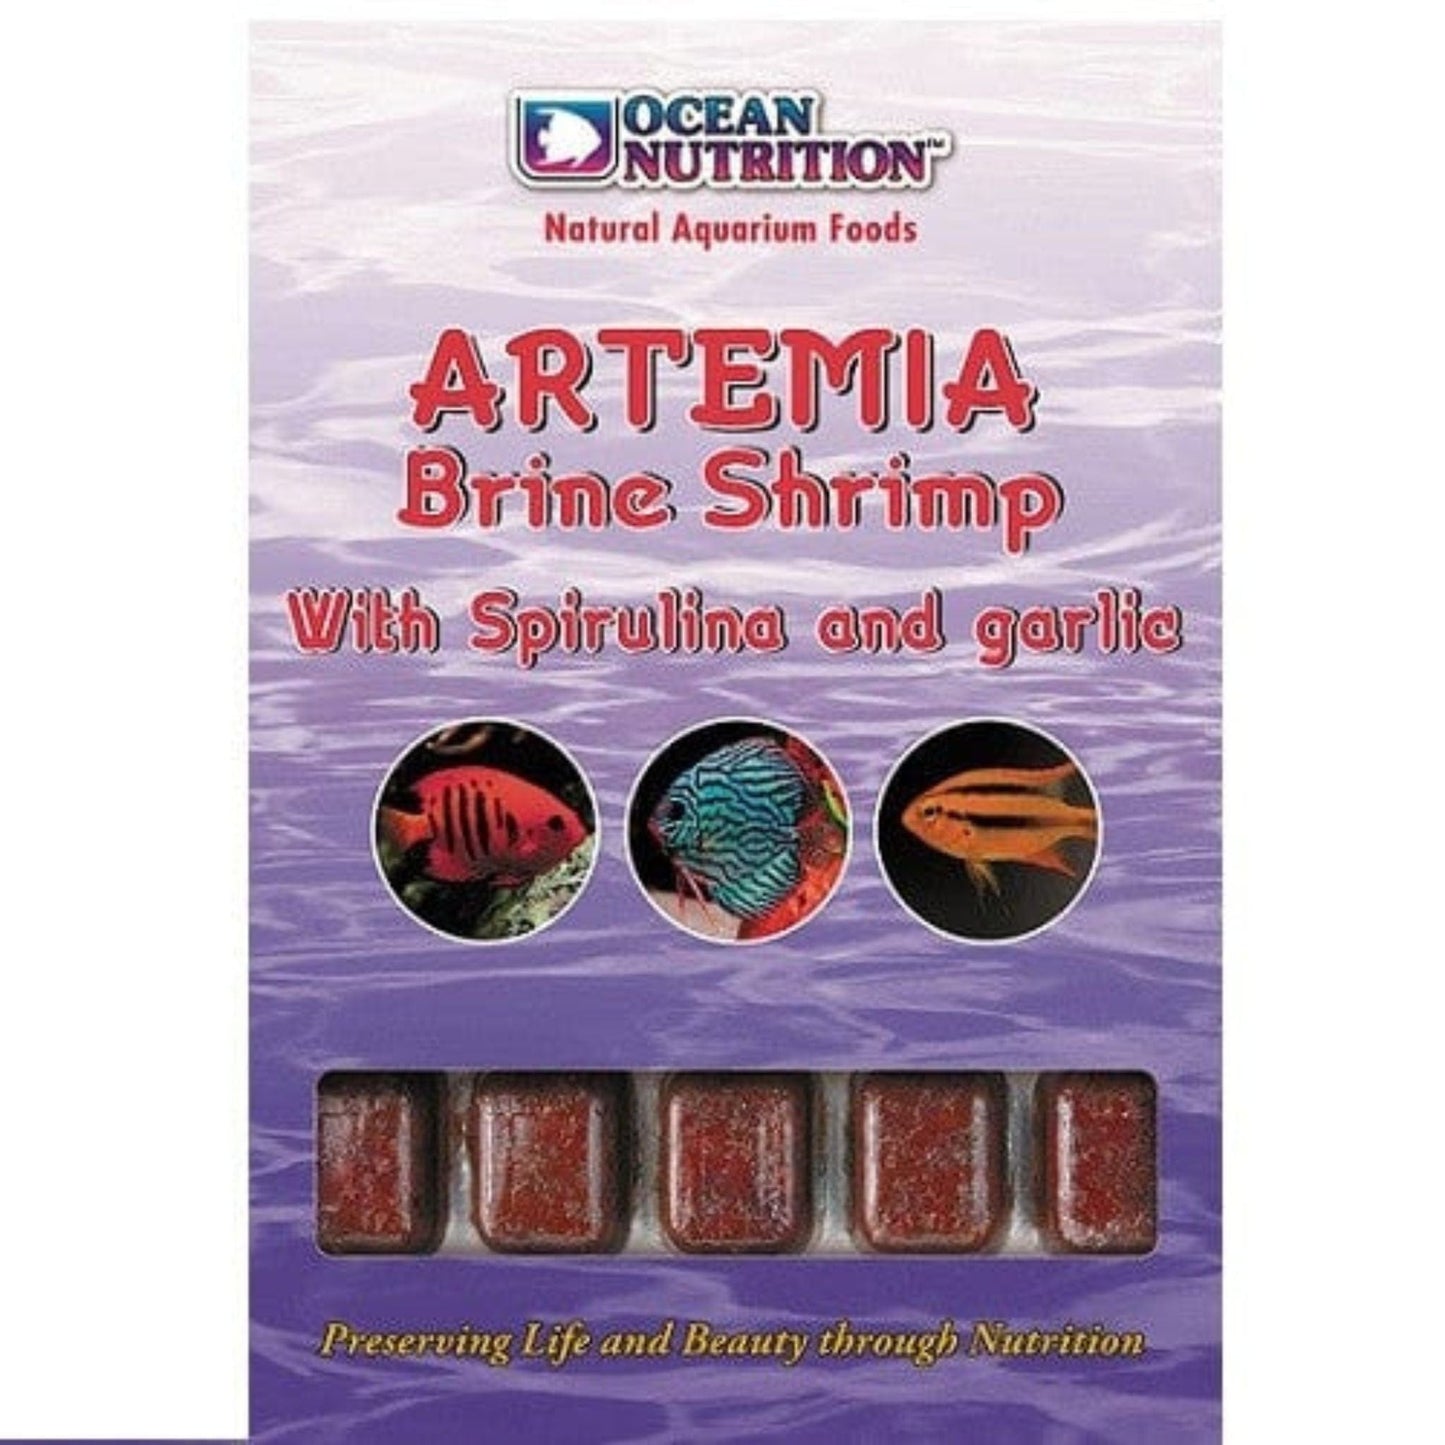 Artemia Brine Shrimp with Spirulina & Garlic - Ocean Nutrition